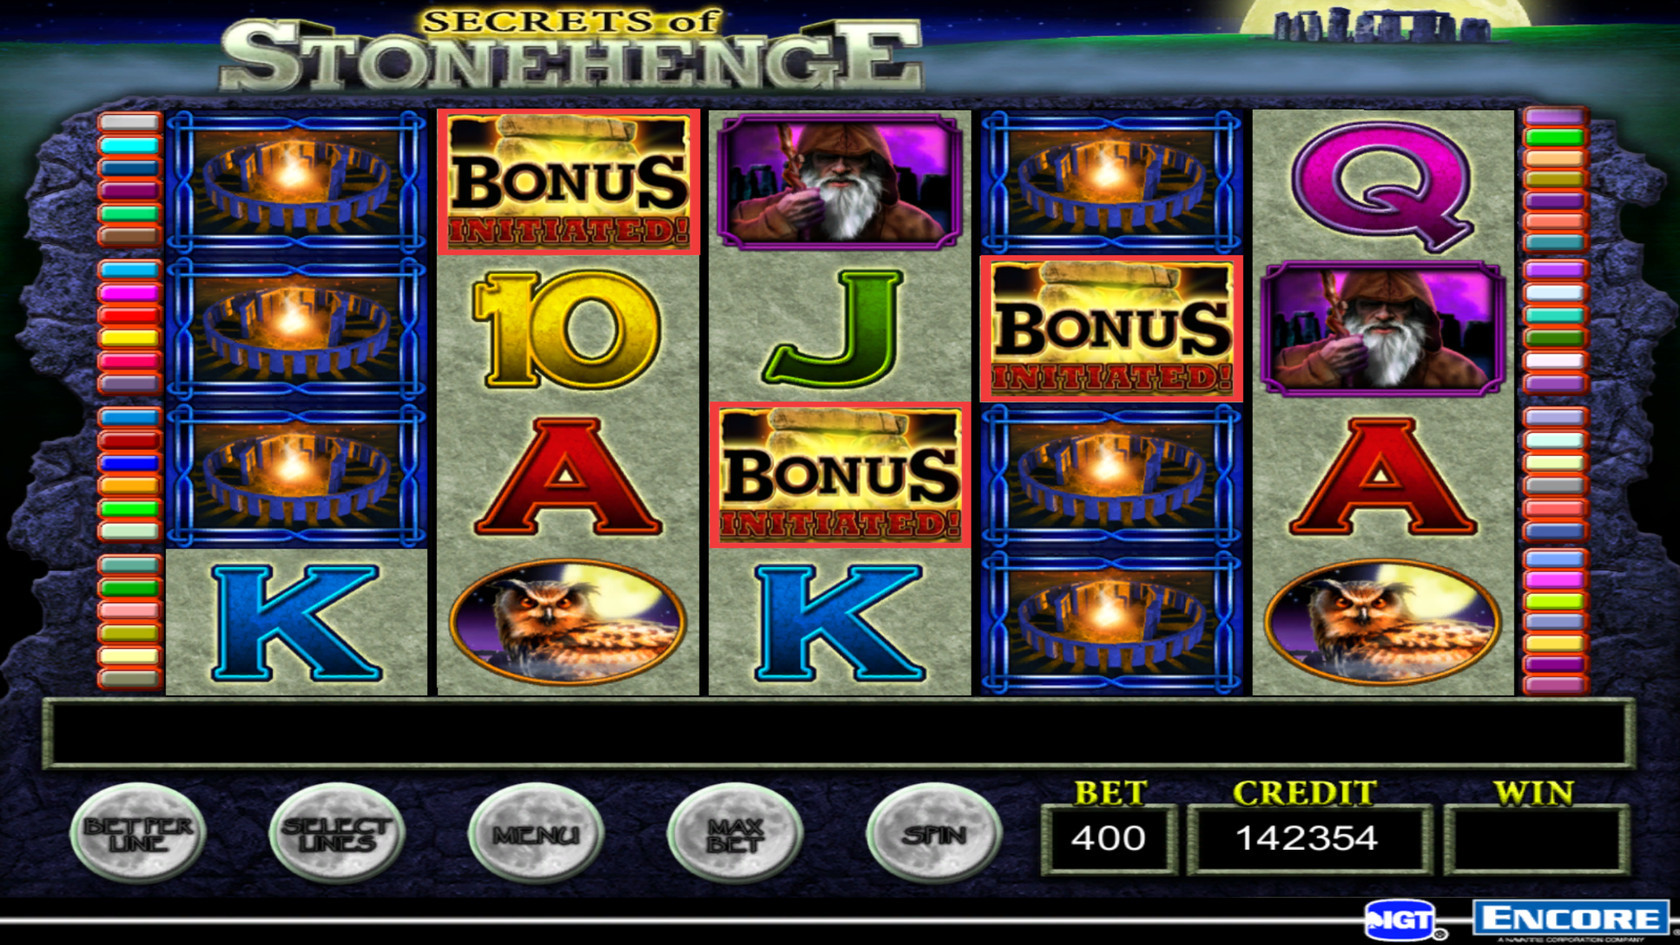 Igt Casino Slot Games